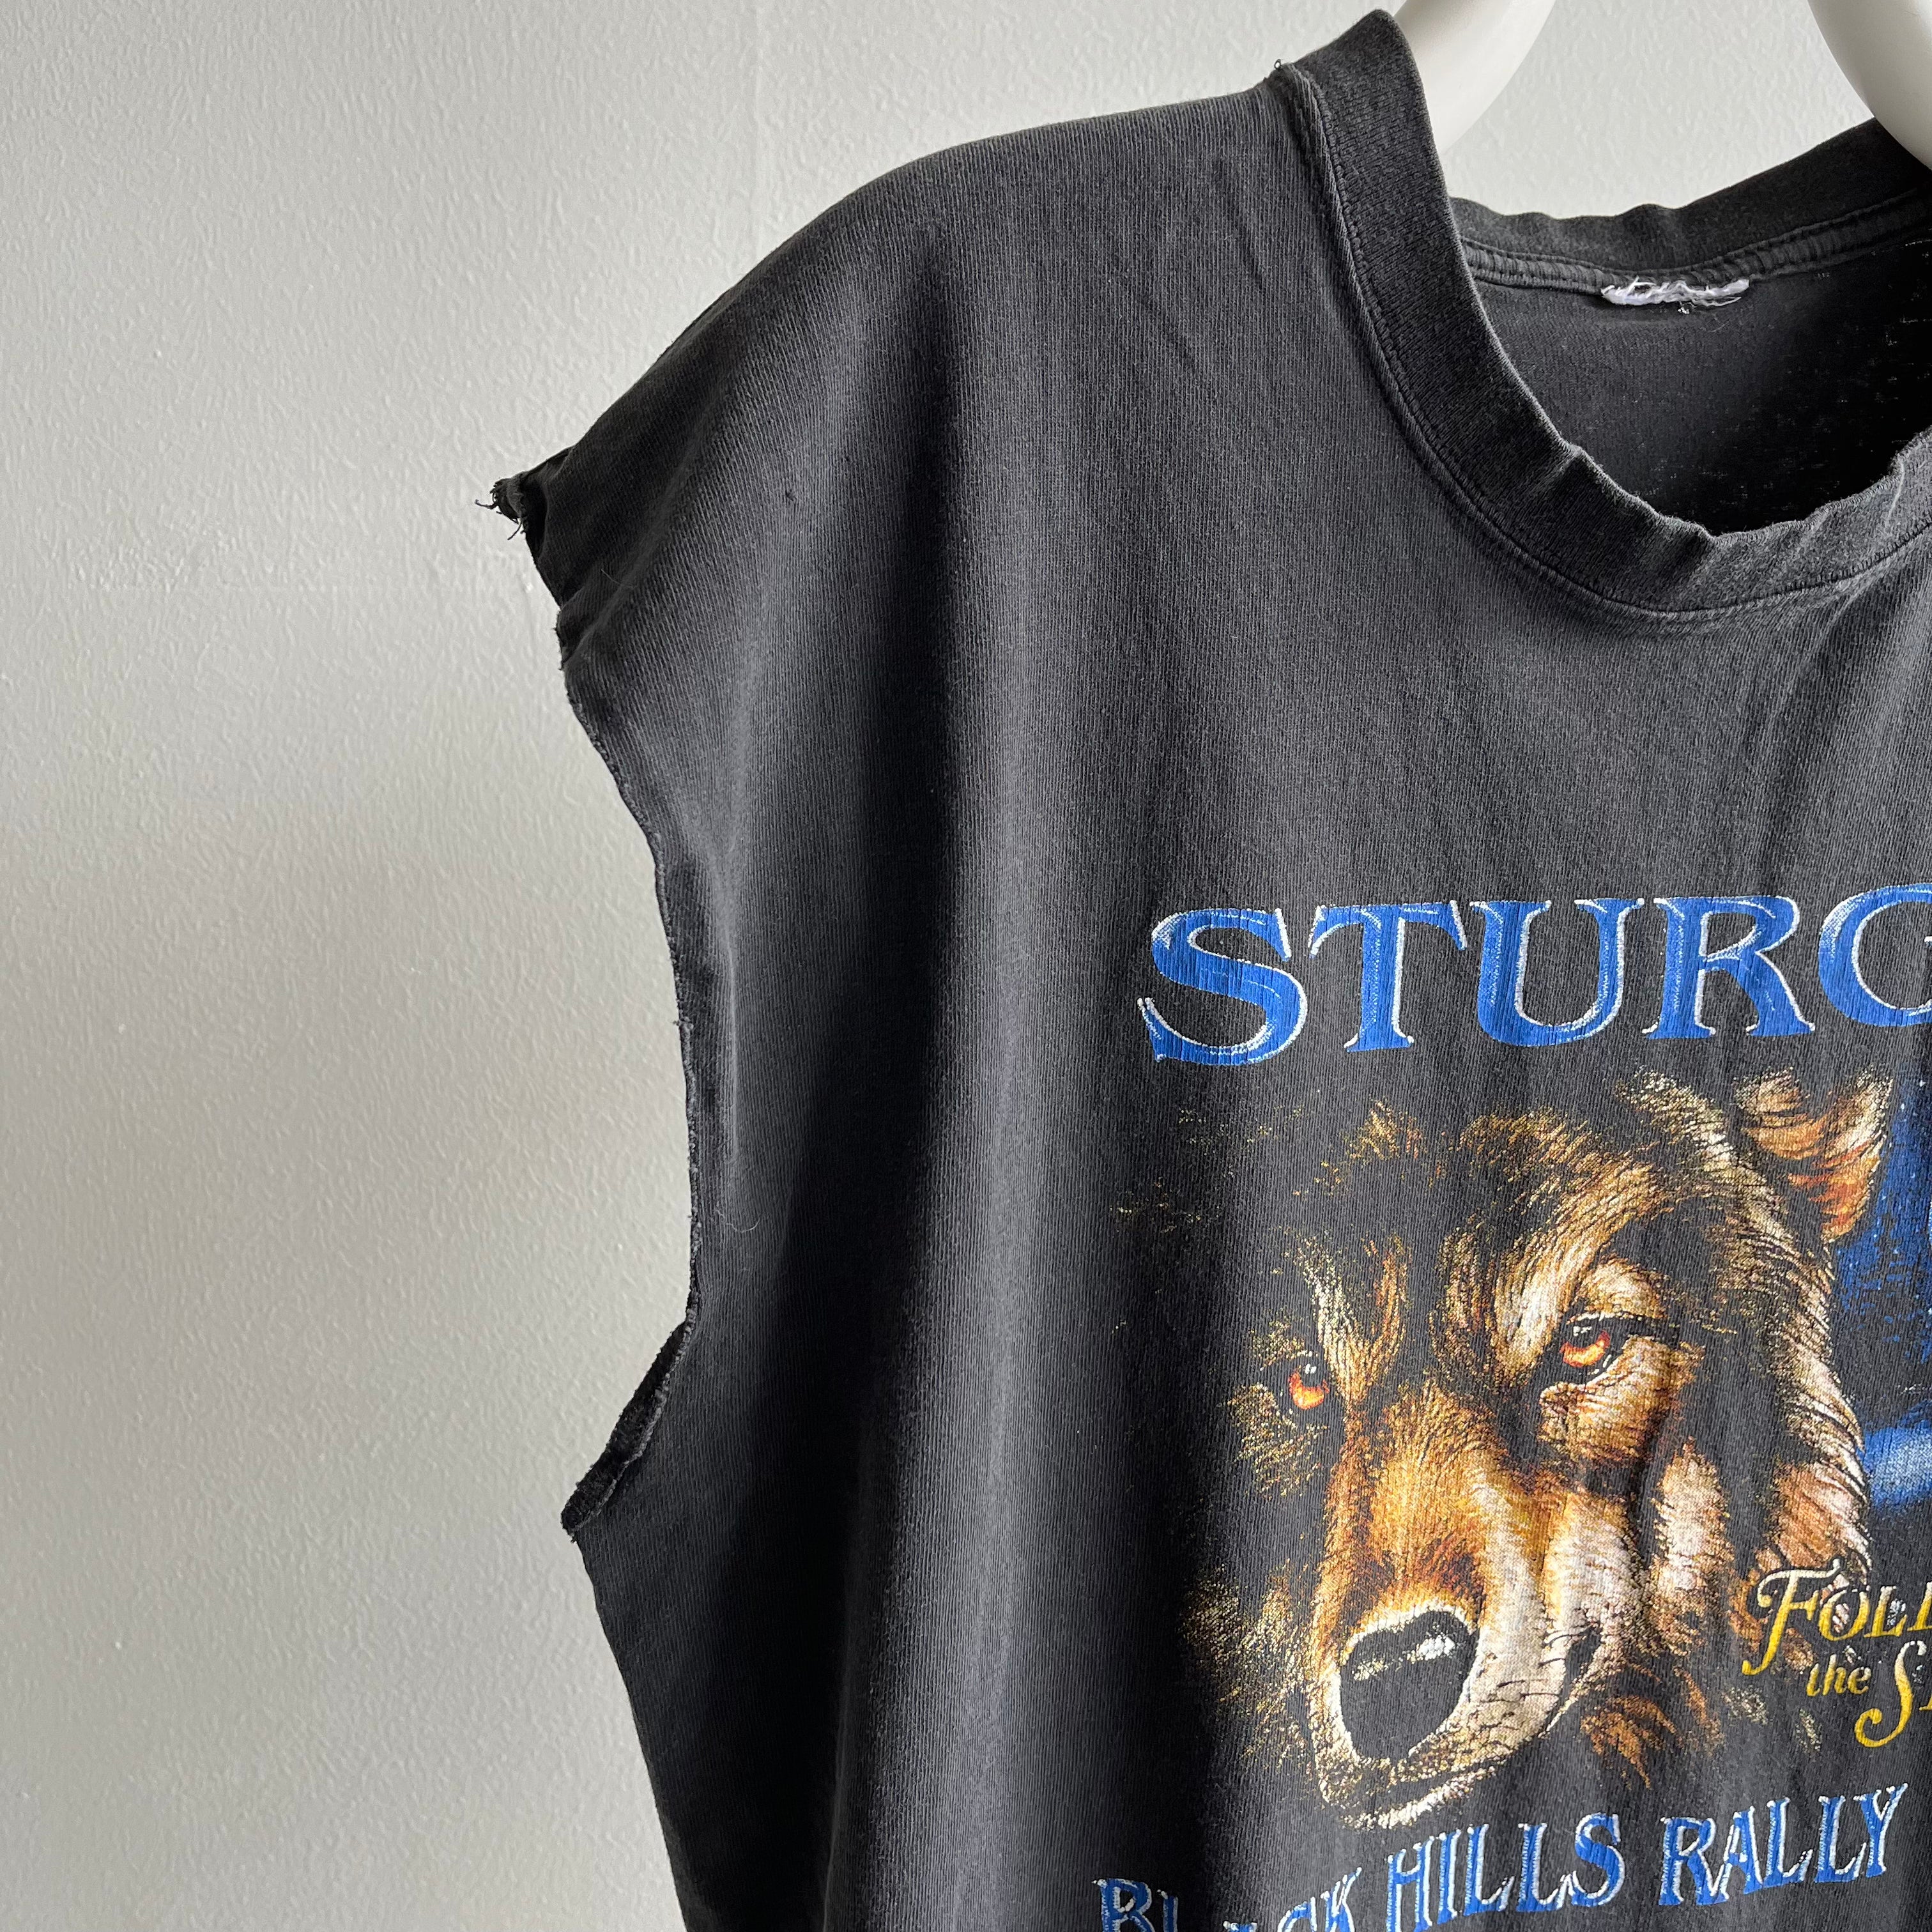 2003 Sturgis Cut Sleeve T-shirt oversize devant et dos